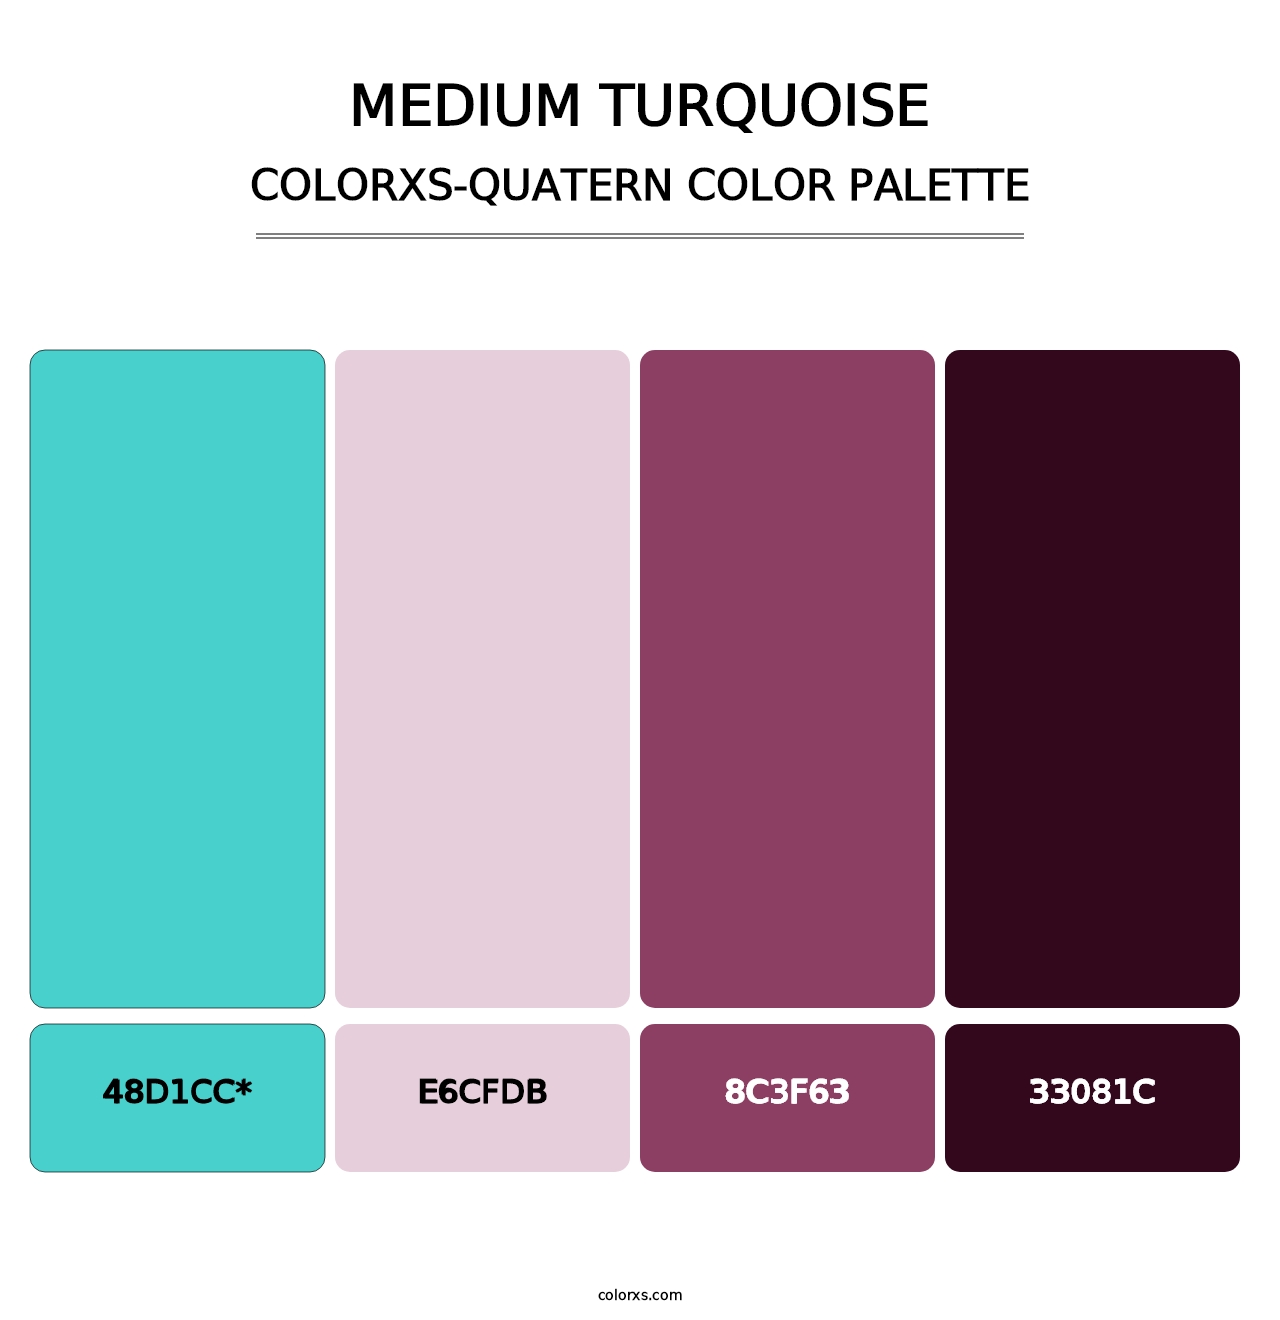 Medium Turquoise - Colorxs Quatern Palette